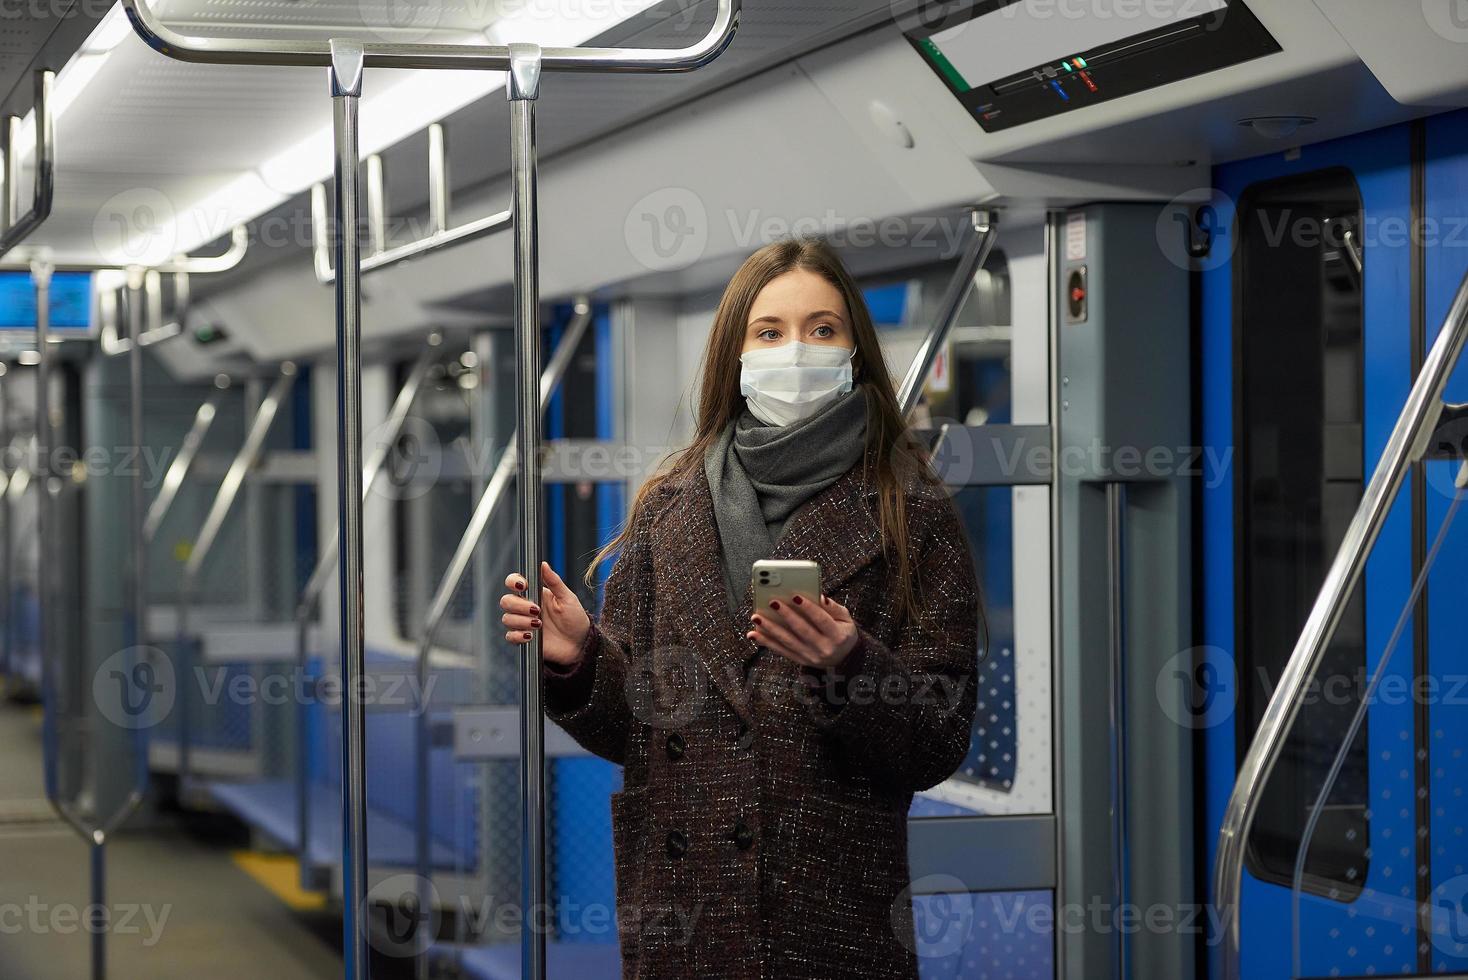 uma mulher com uma máscara facial está de pé usando um smartphone em um moderno vagão do metrô foto